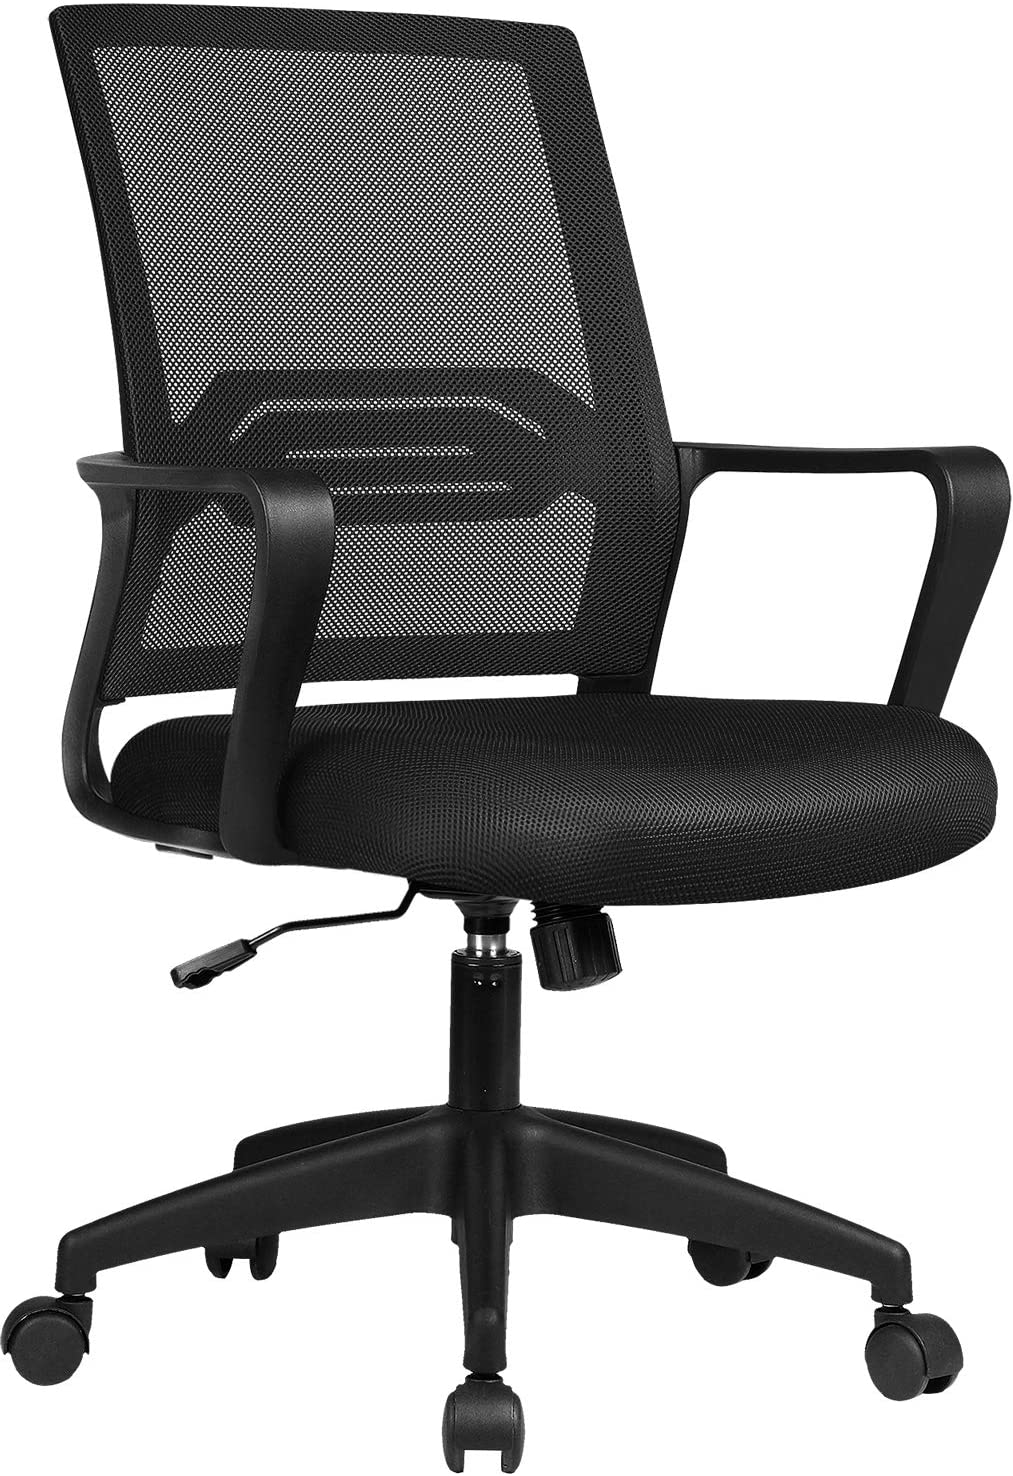 Comhoma sedia da ufficio con posizione ergonomica, girevole con braccioli e supporto lombare